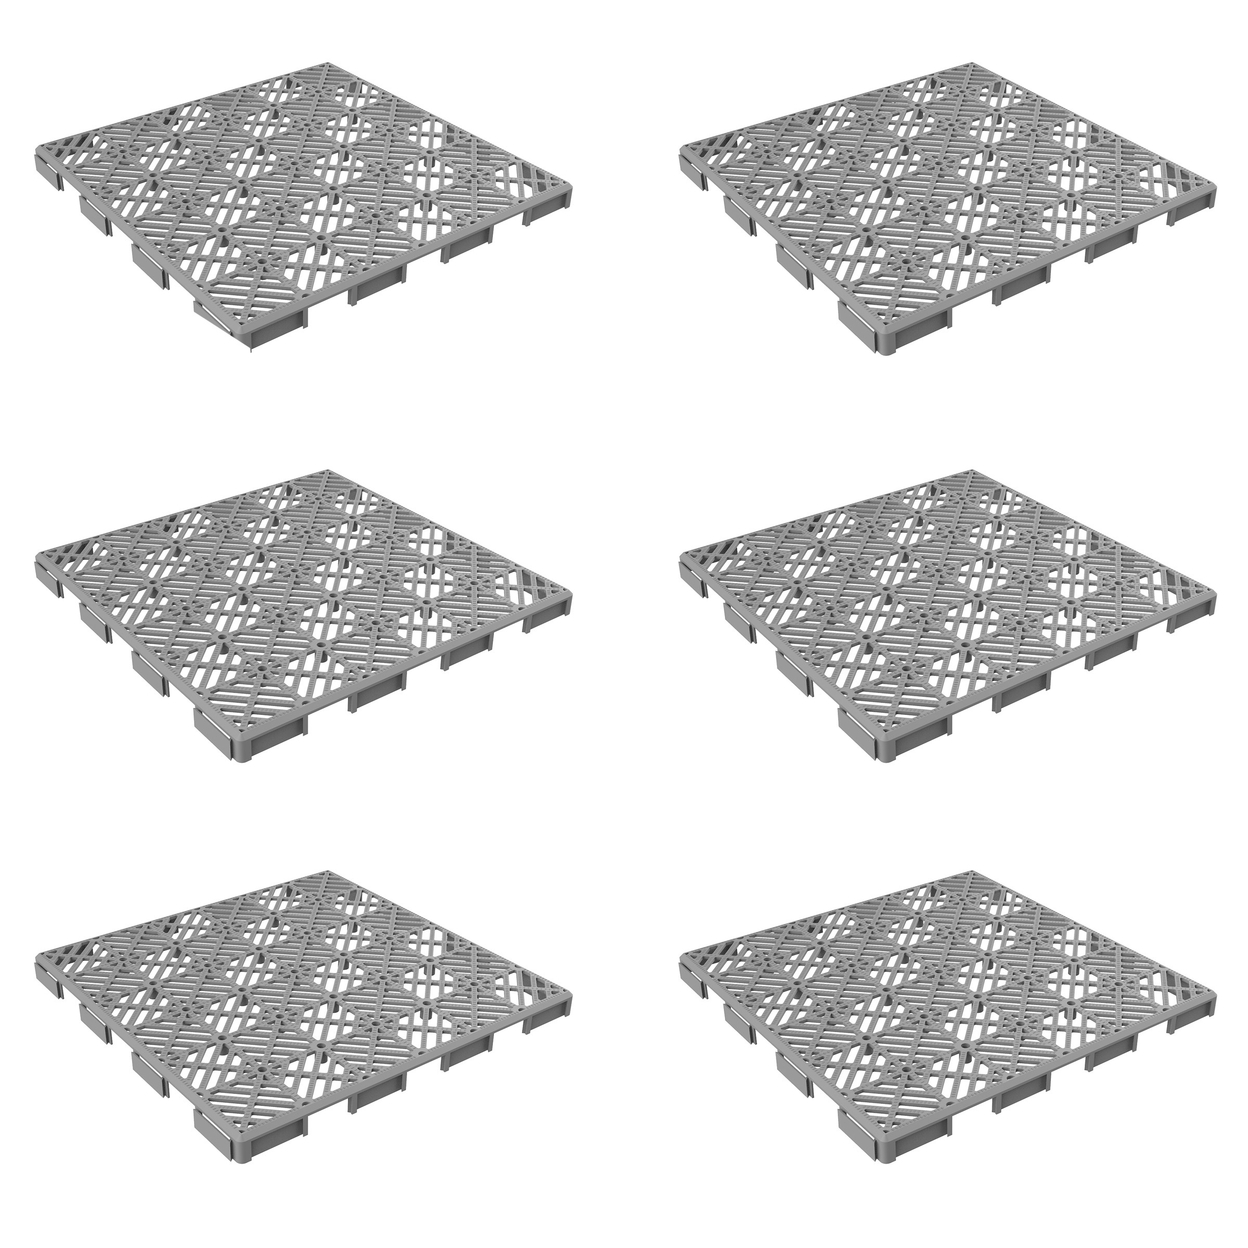 Outdoor Patio Deck Easy Snap Floor Tiles 11.5 X 11.5 Set Of 6 Water Drainage